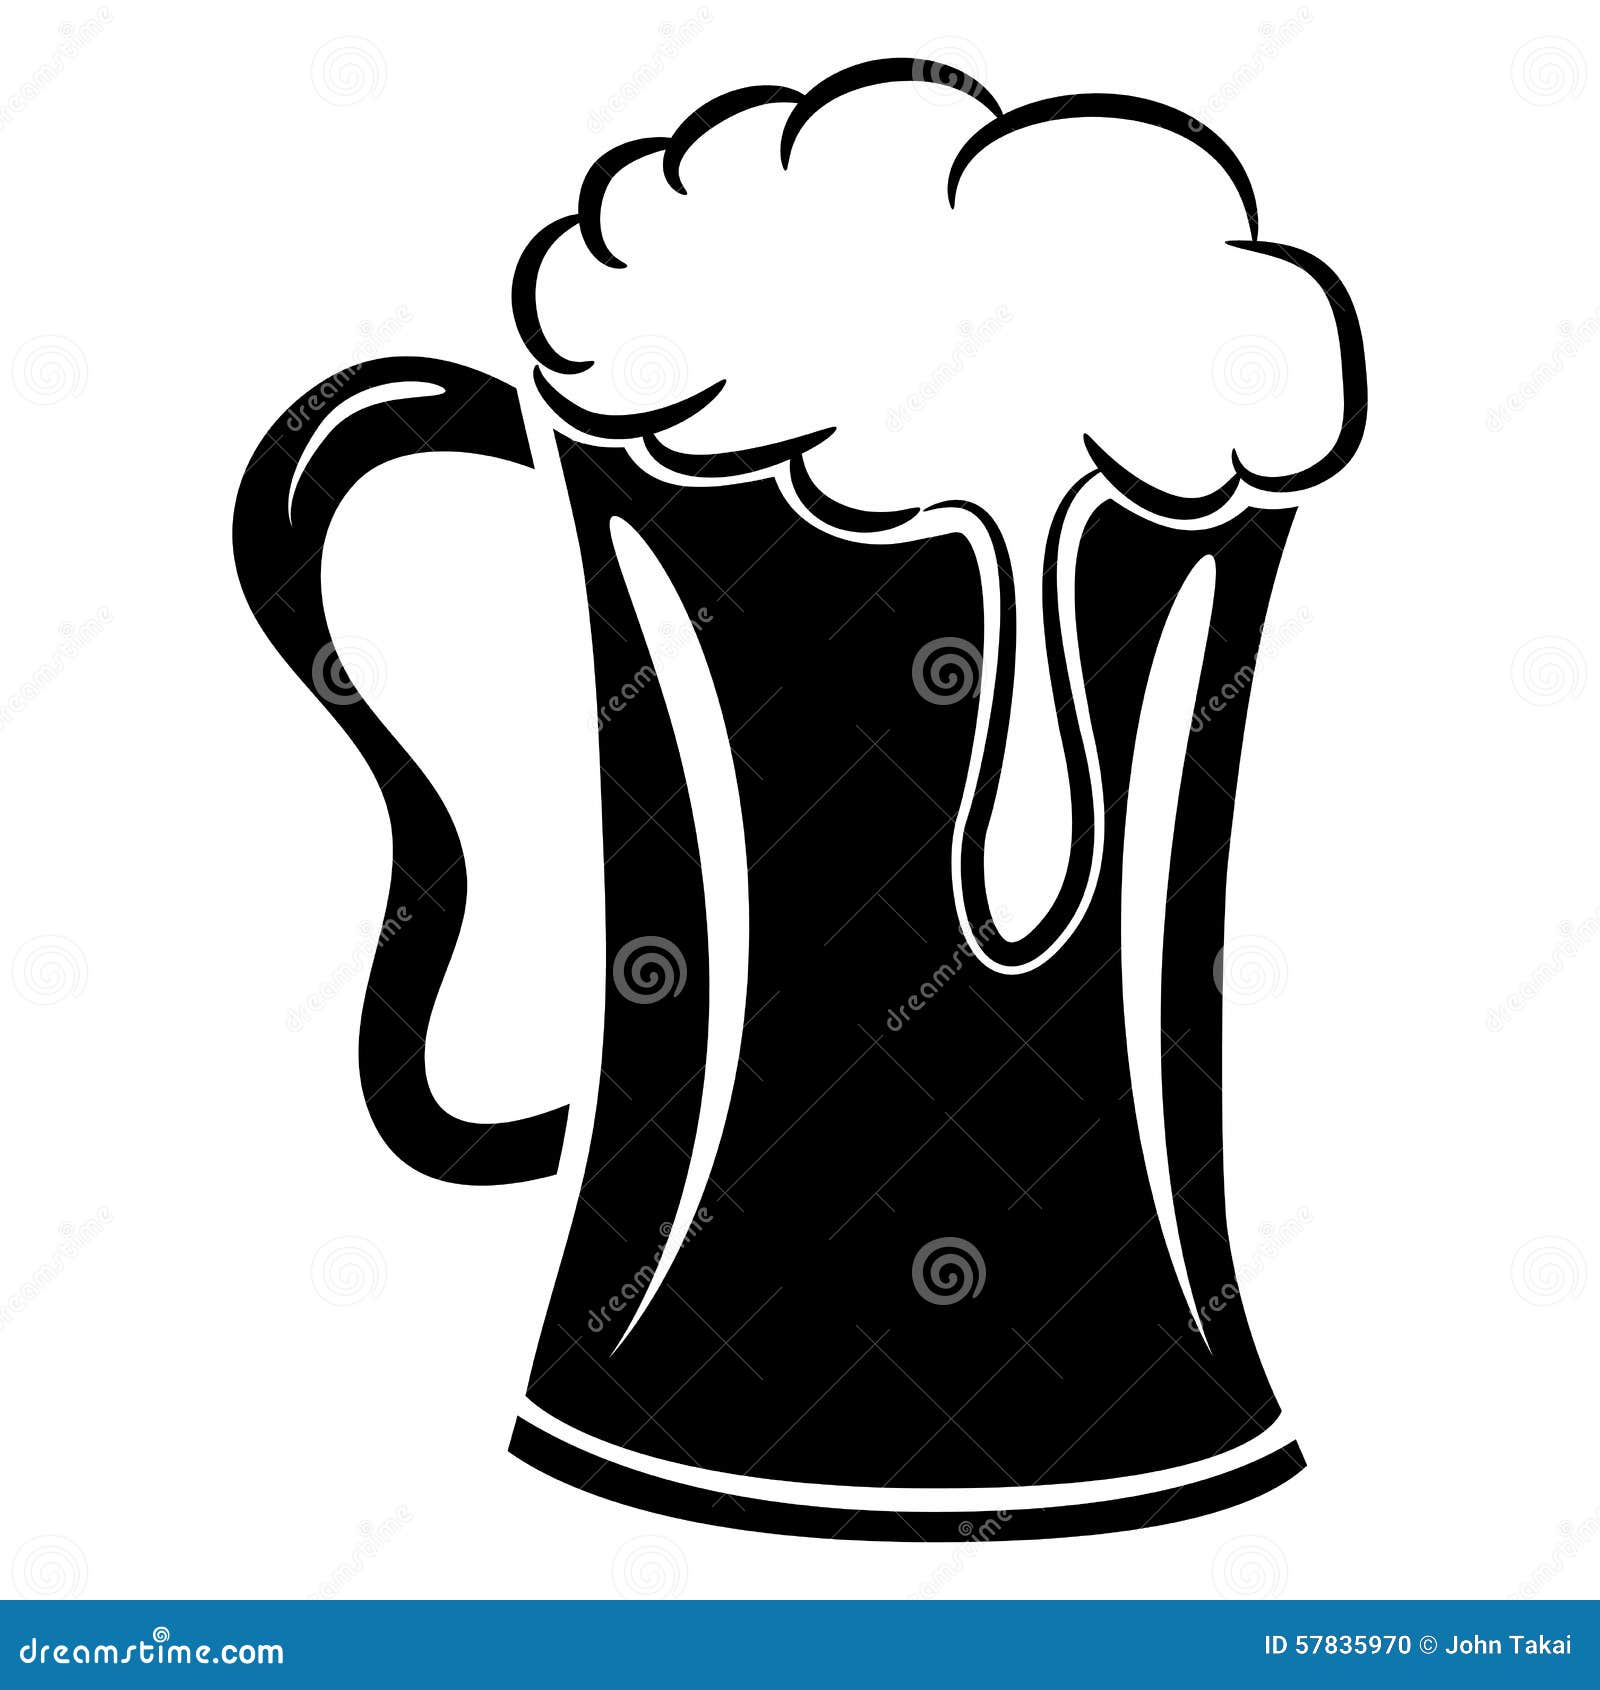 beer mug icon png